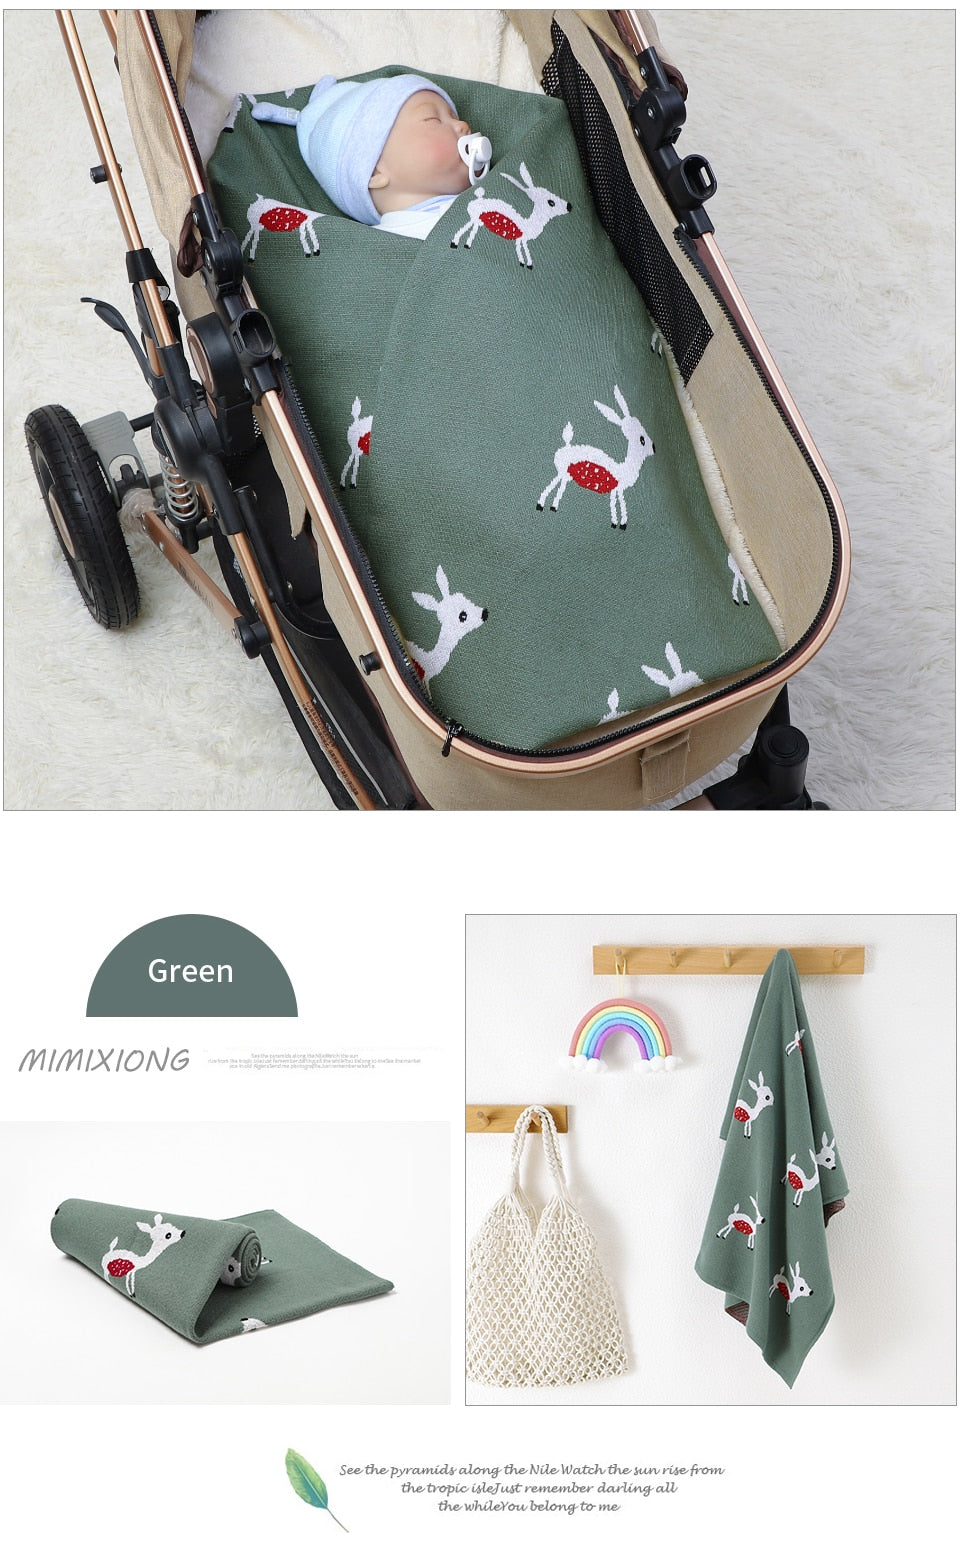 Newborn Babies' Knitted Cute Deer Super Soft Cotton Blankets - Grey, Brown, Green.